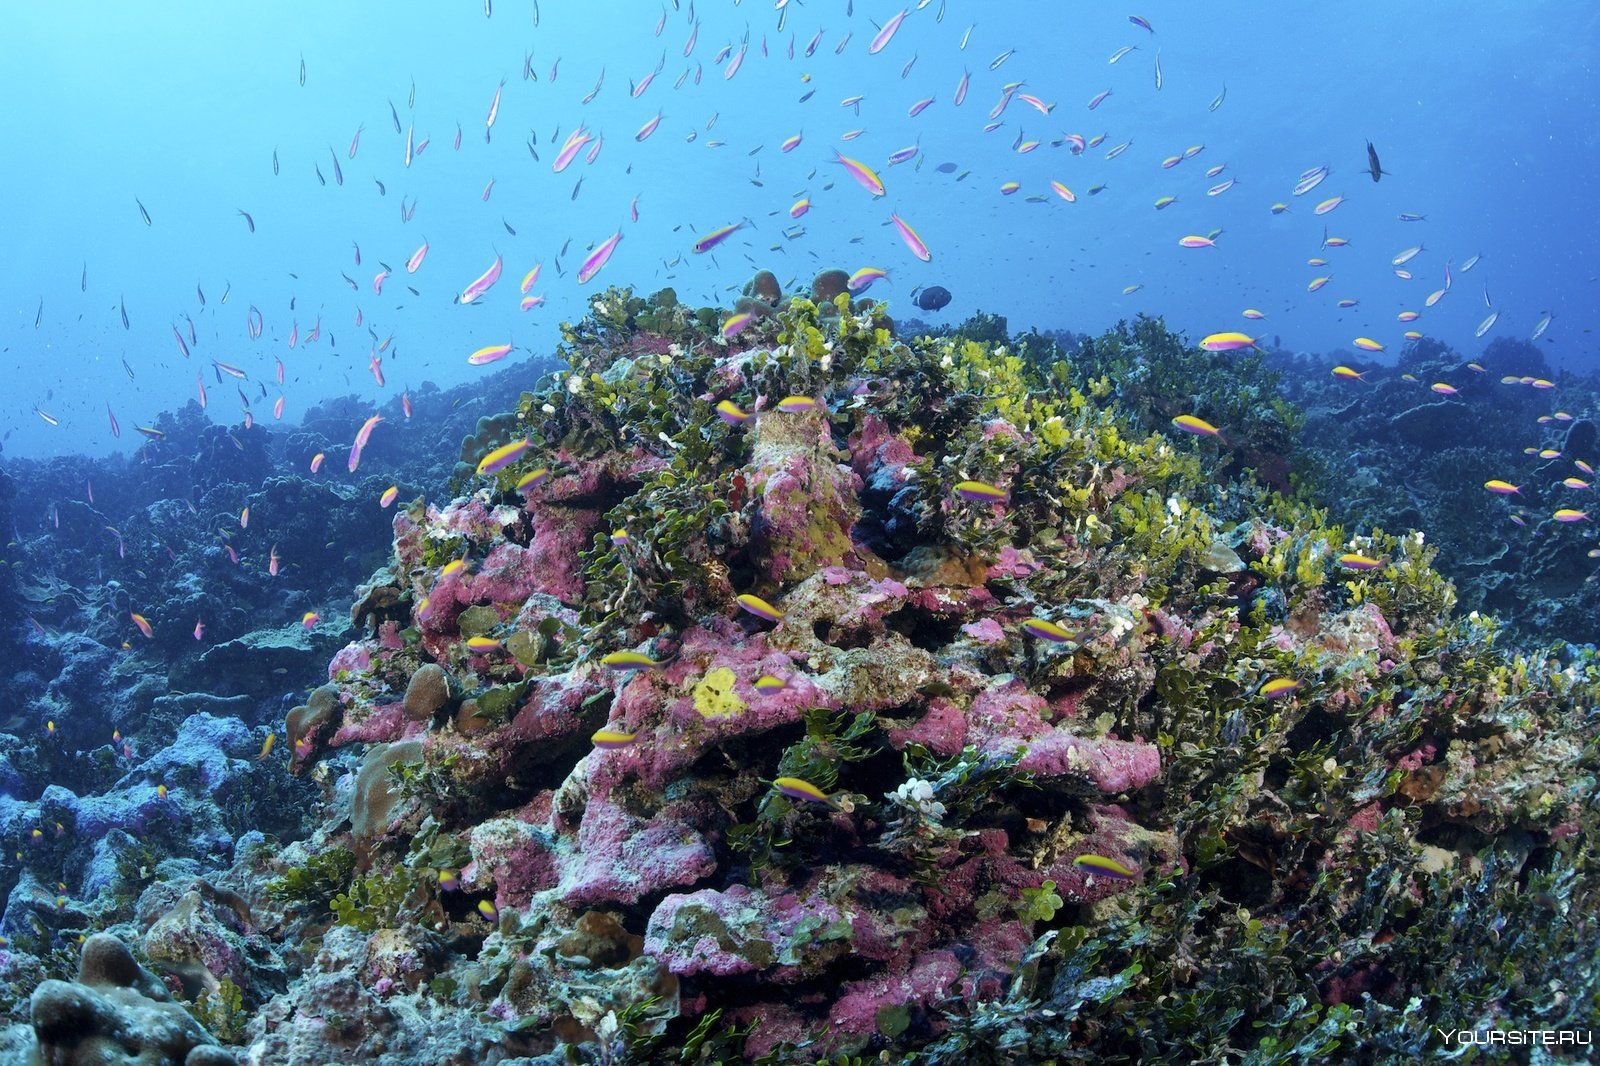 Органический мир европы. Заповедная территория островов Феникс. Заповедник острова Феникс Кирибати. Карибское море Атлантический океан.